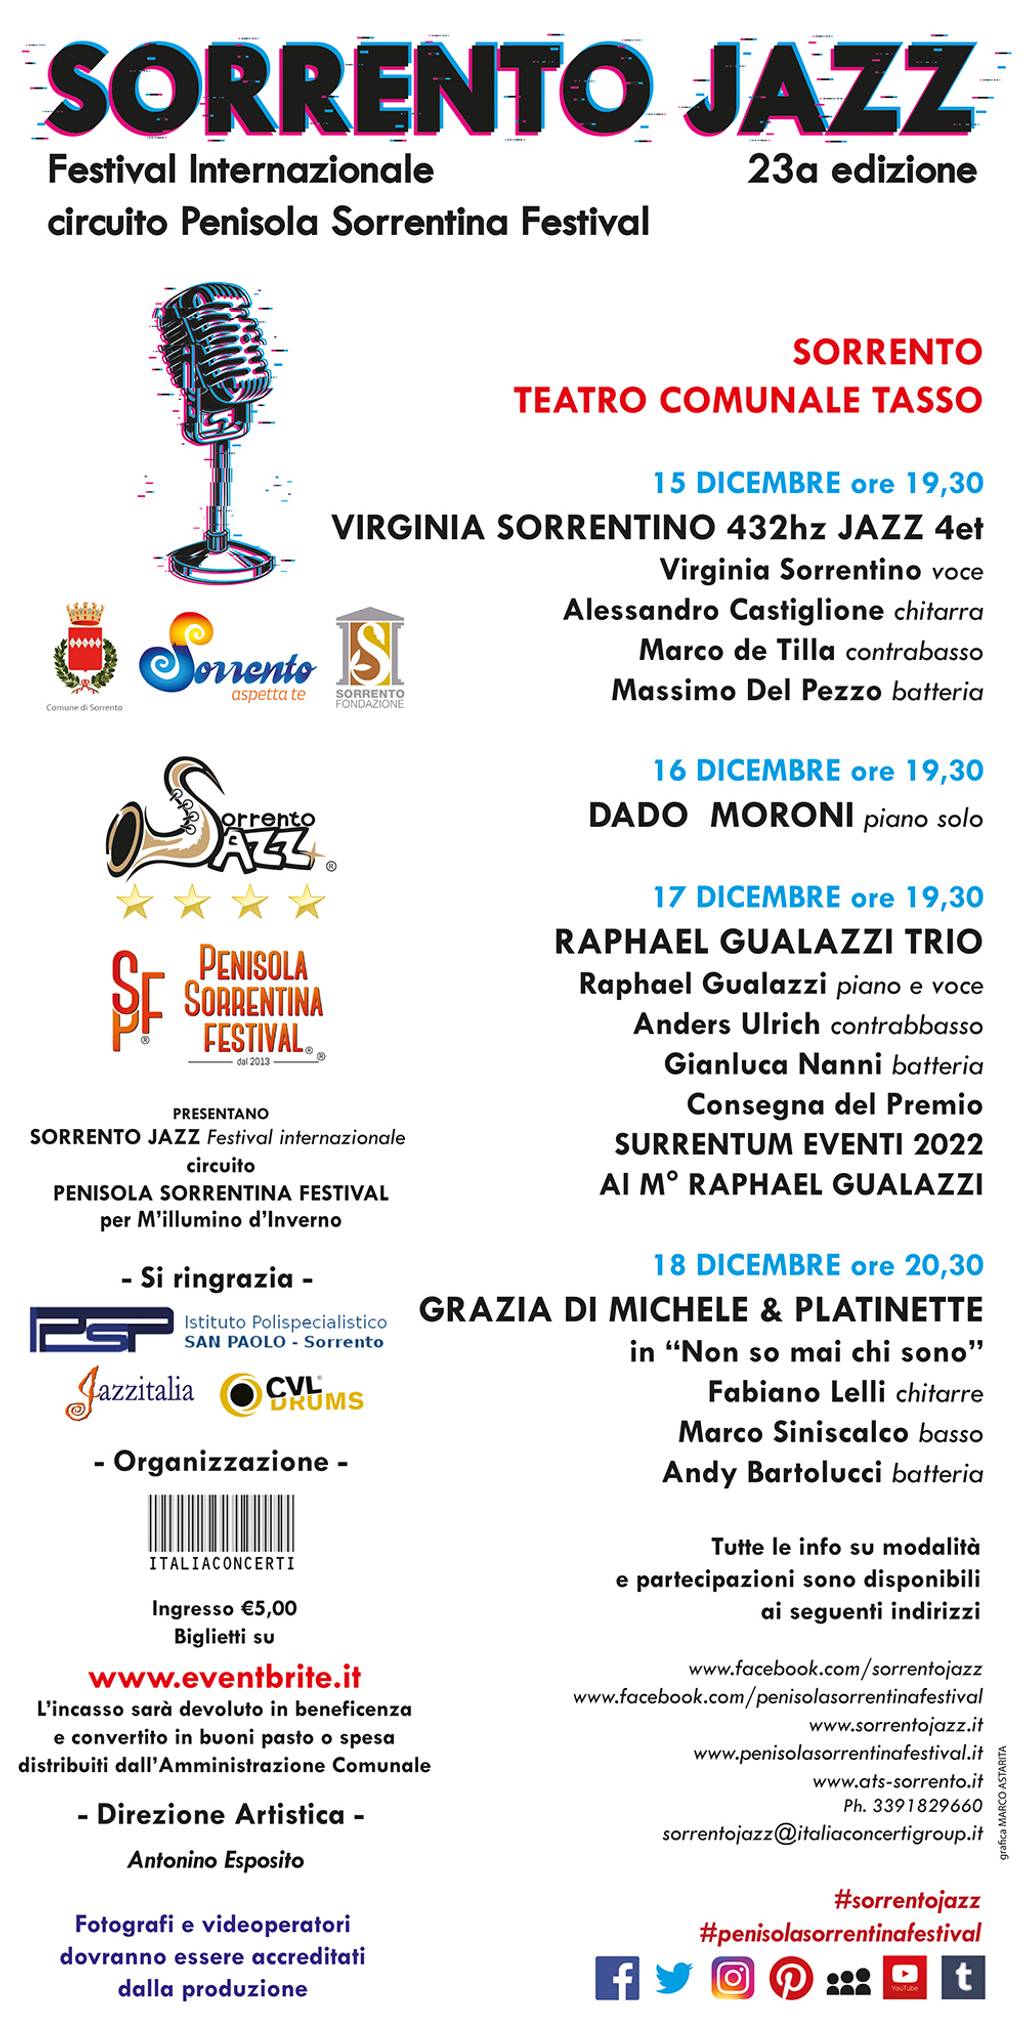 Sorrento Jazz 23a edizione